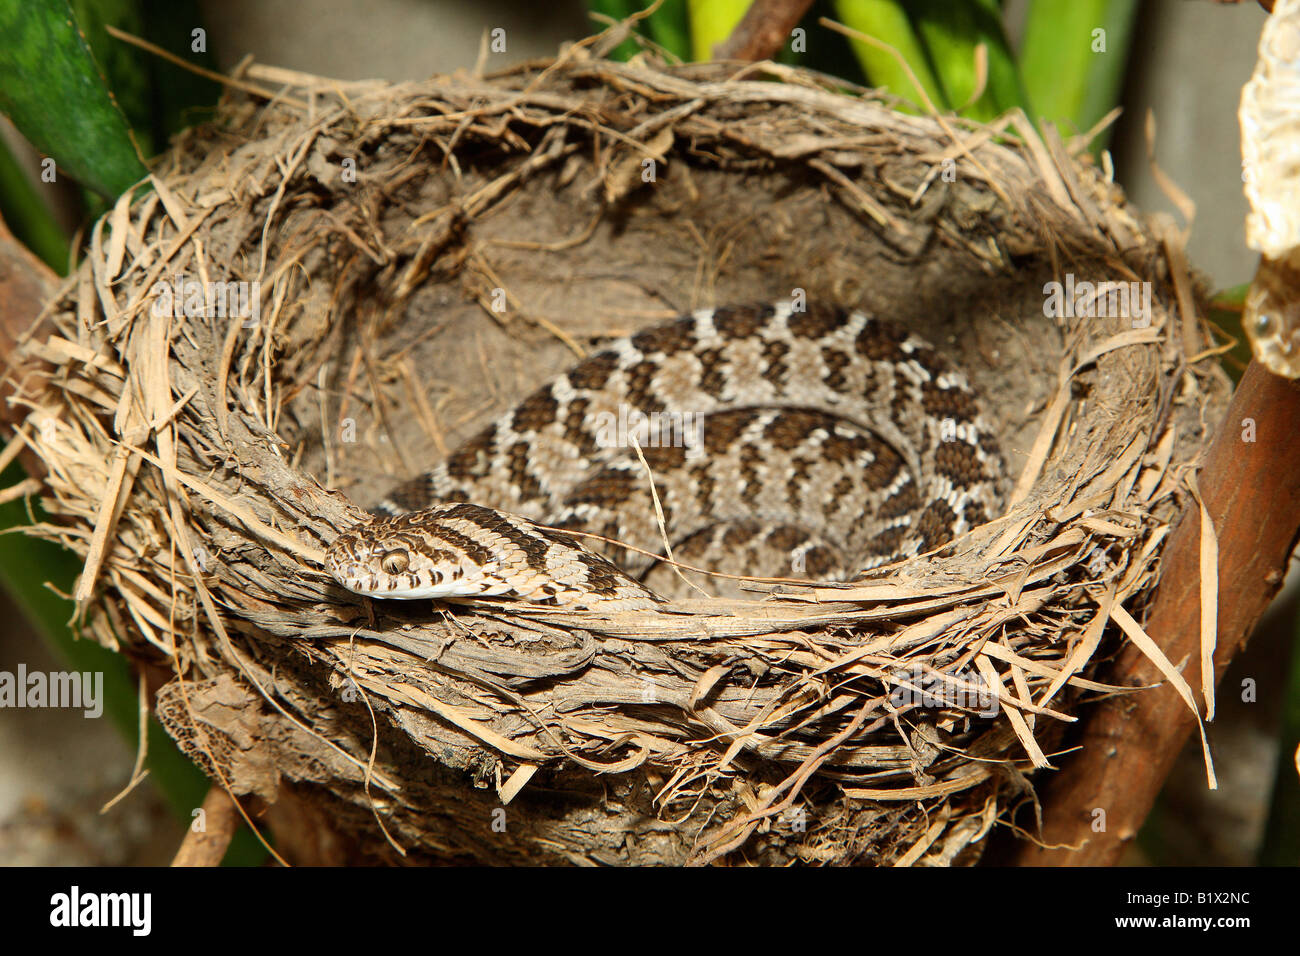 Common Egg-eater / Dasypeltis scabra Stock Photo